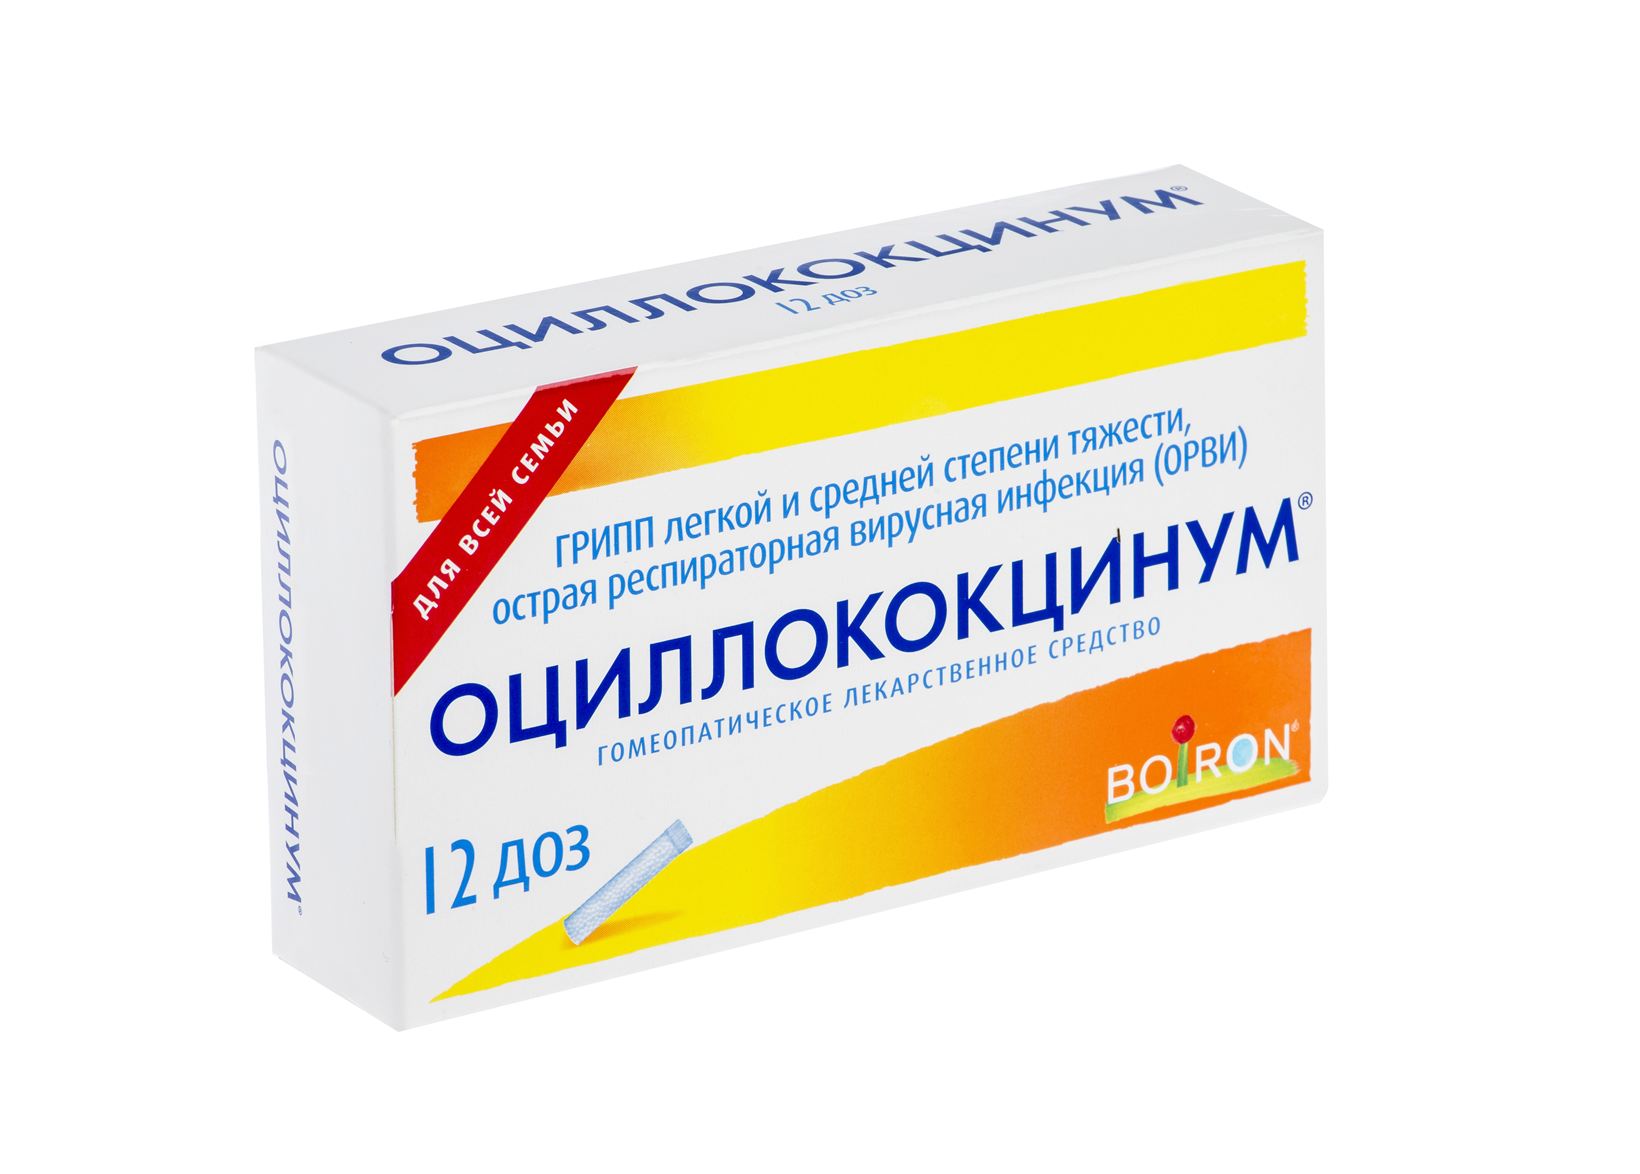 Оциллококцинум 30 Доз Купить В Москве